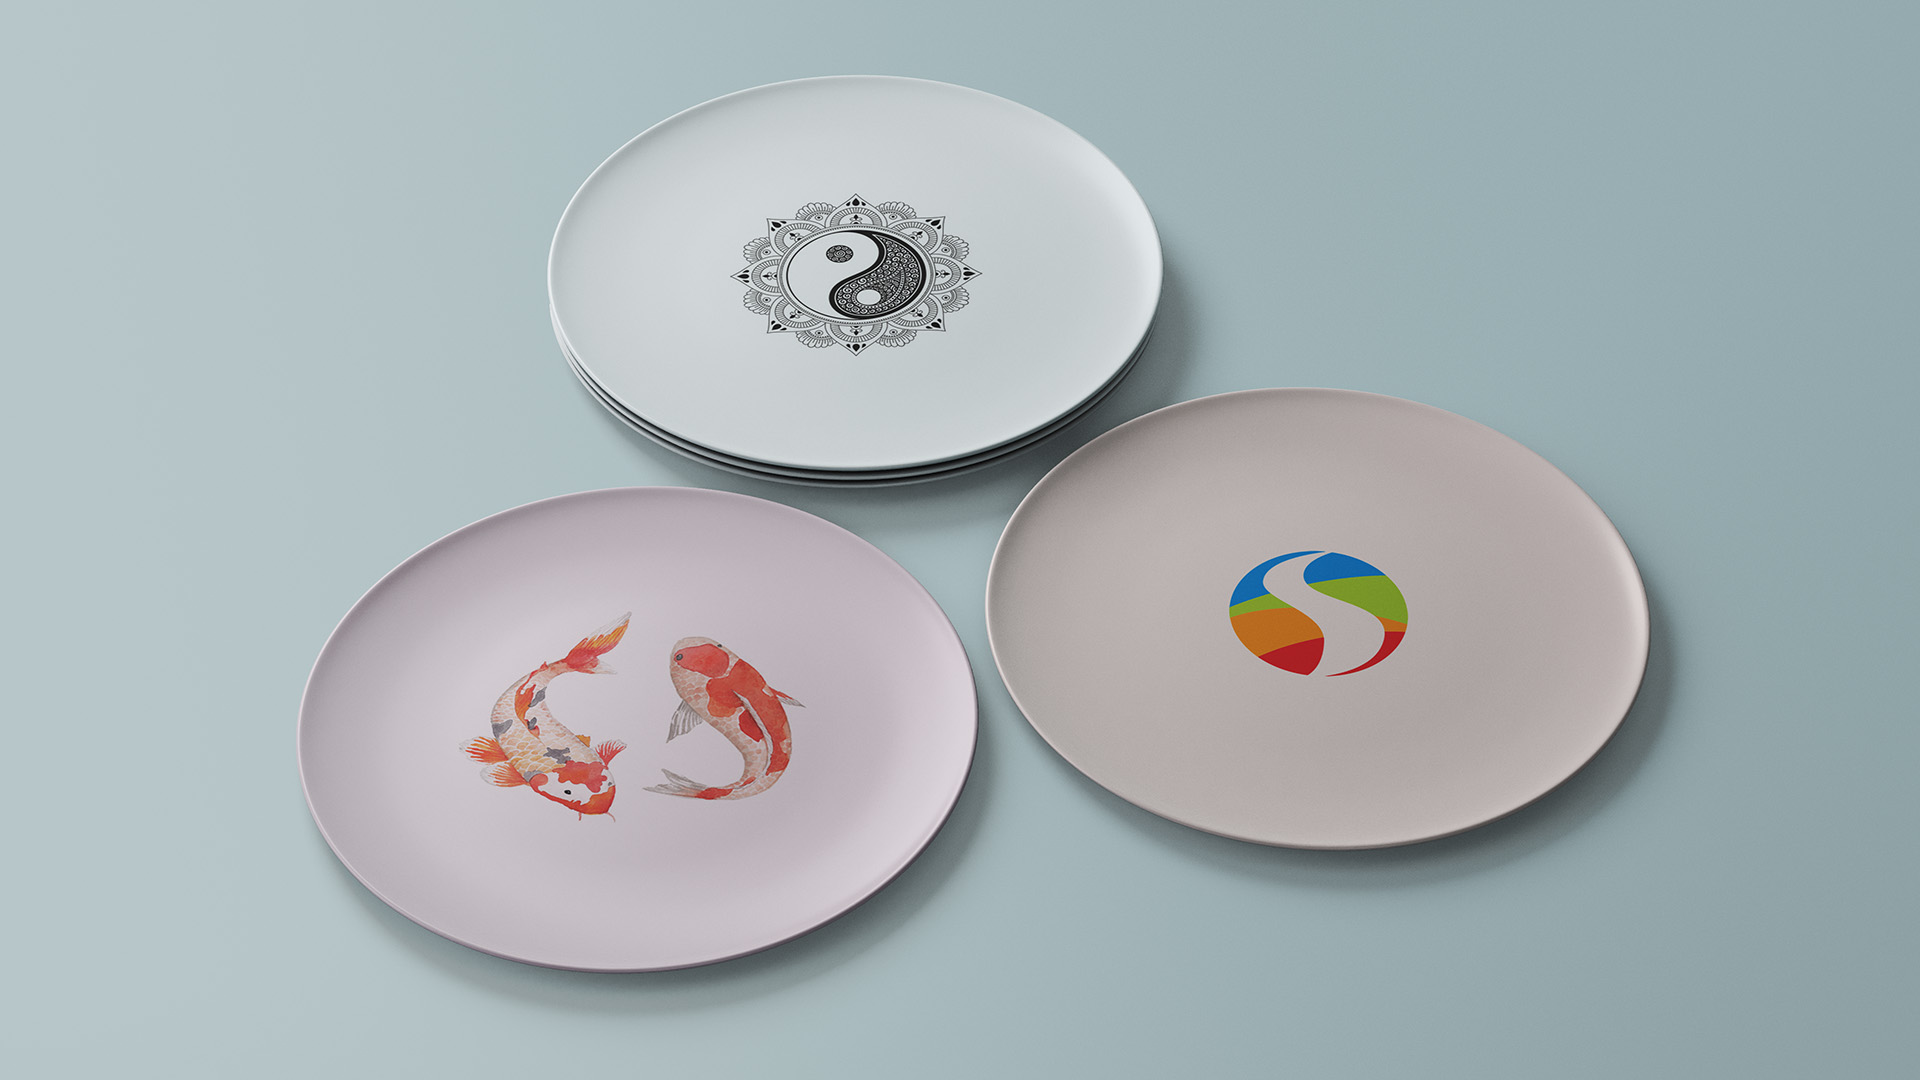 Imagem de pratos com as imagens inspiracionais da identidade visual da Simbolicah.